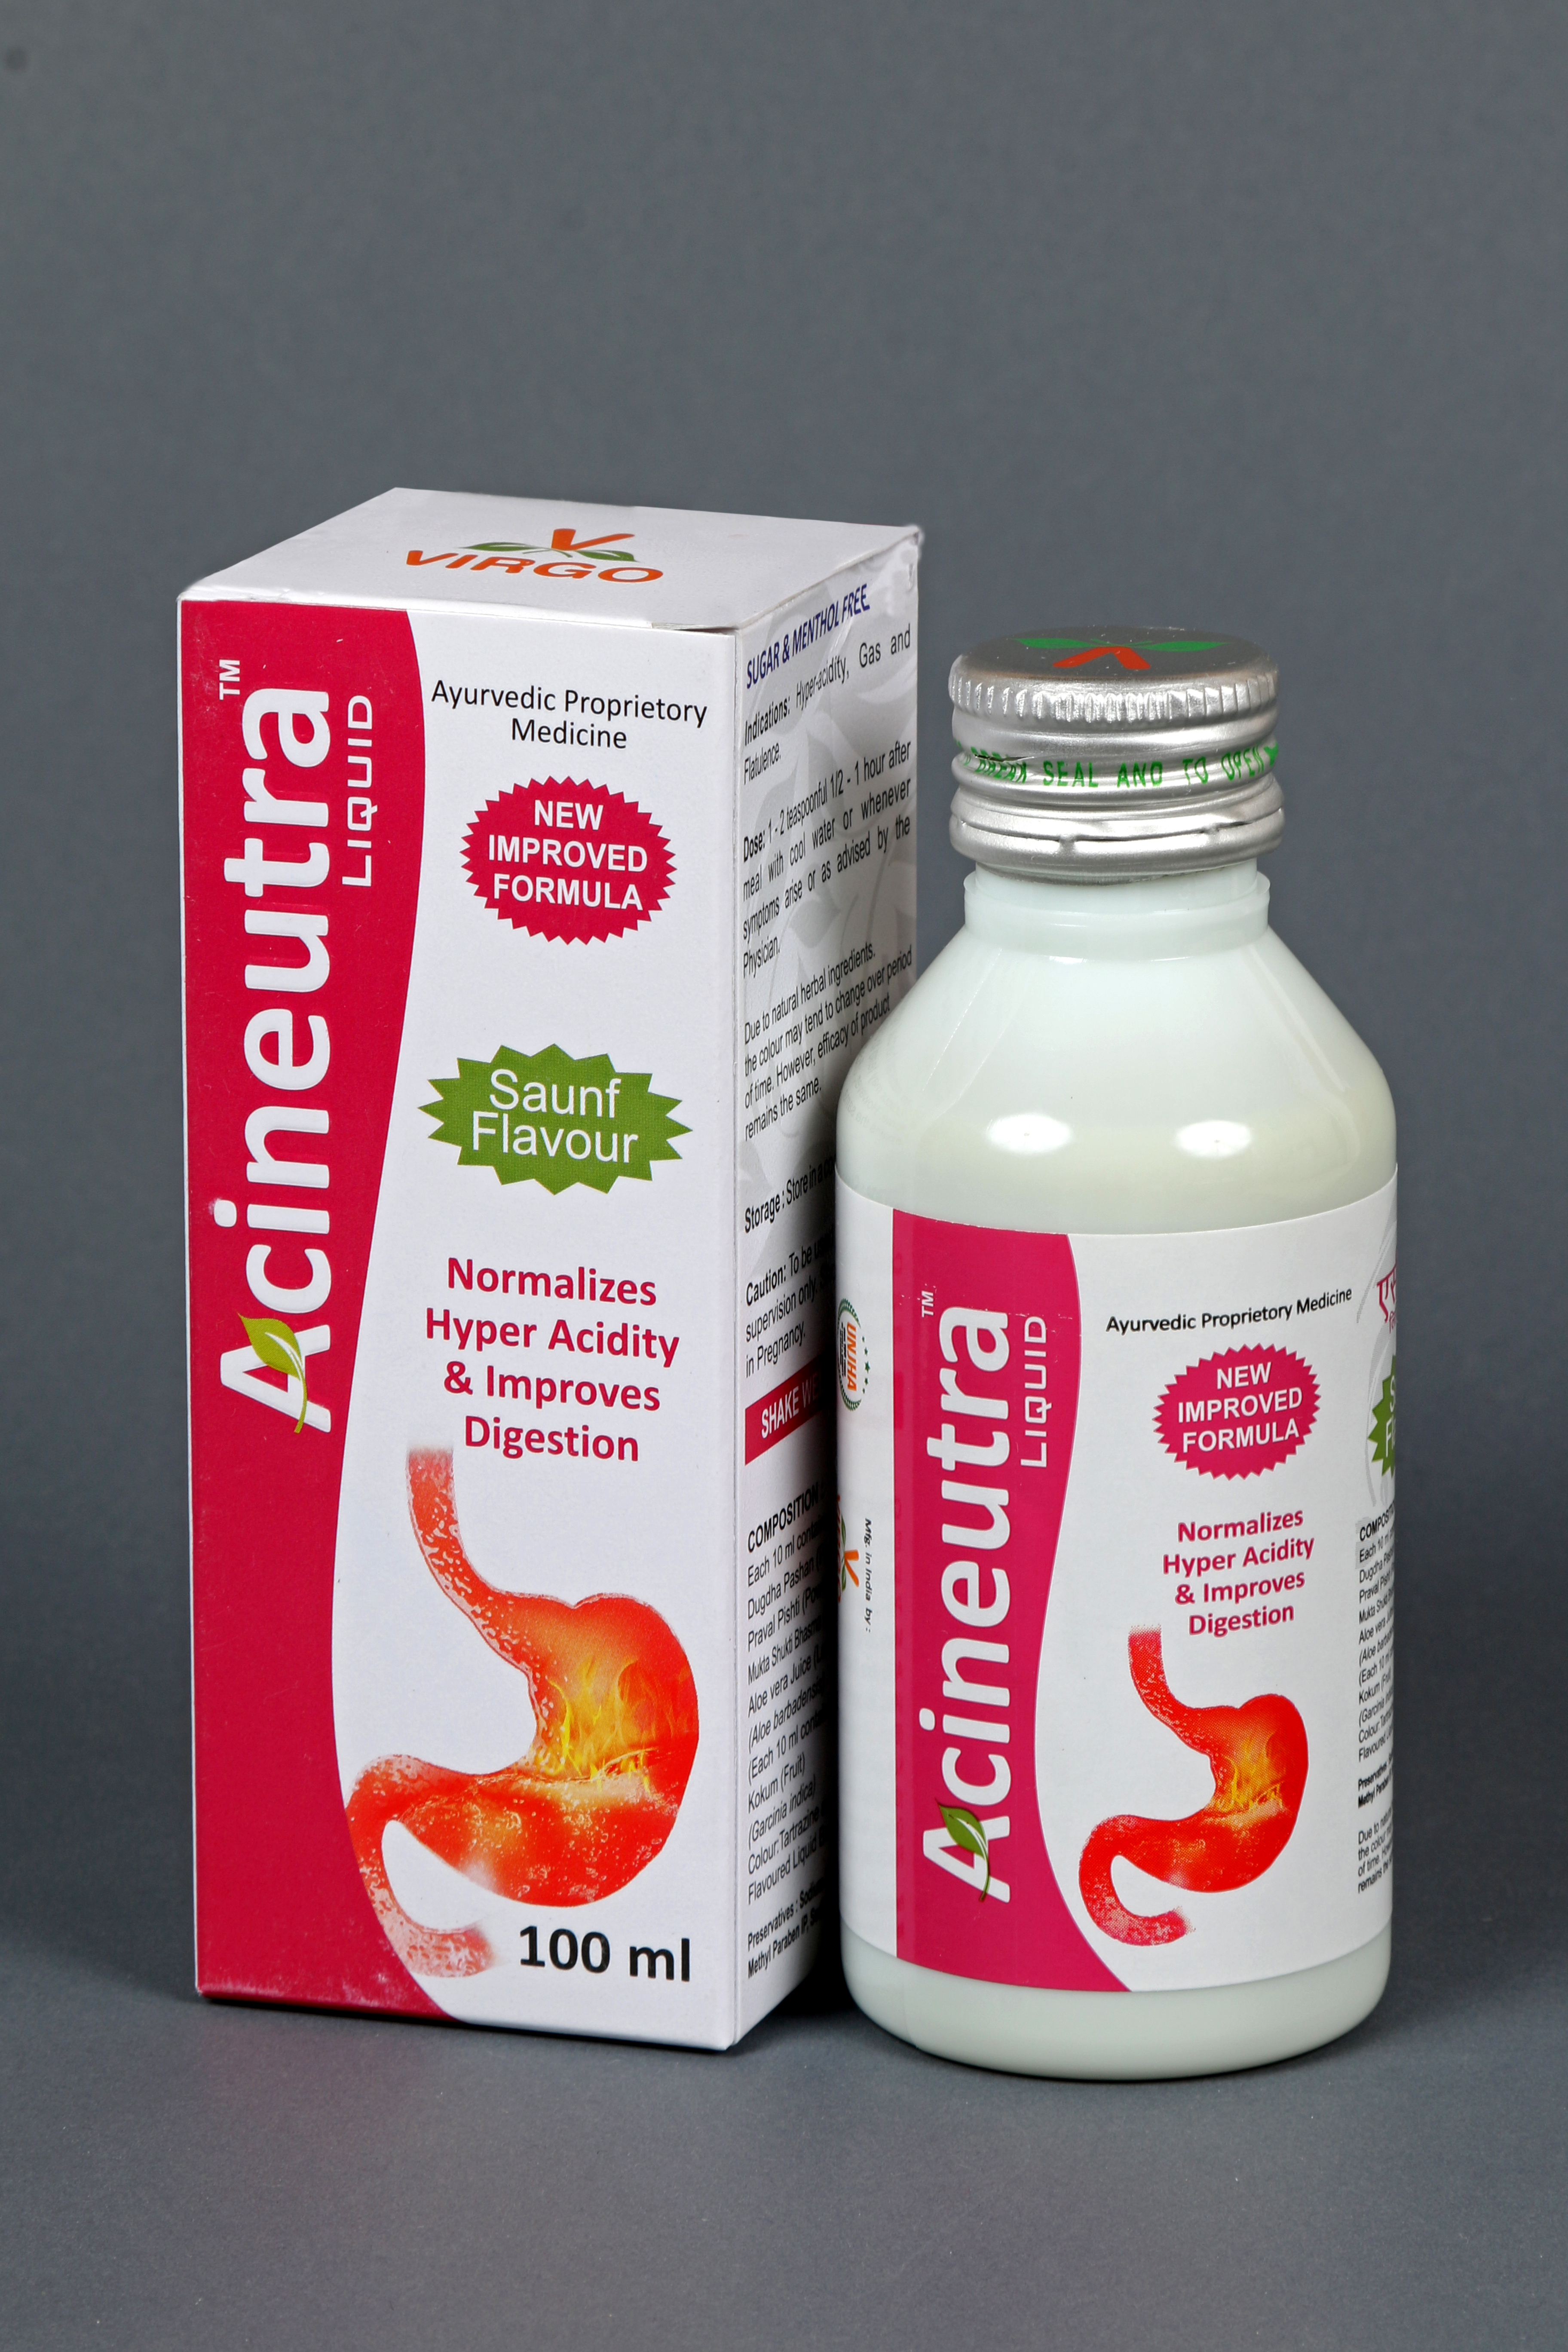 Buy Virgo Acineutra Liquid at Best Price Online